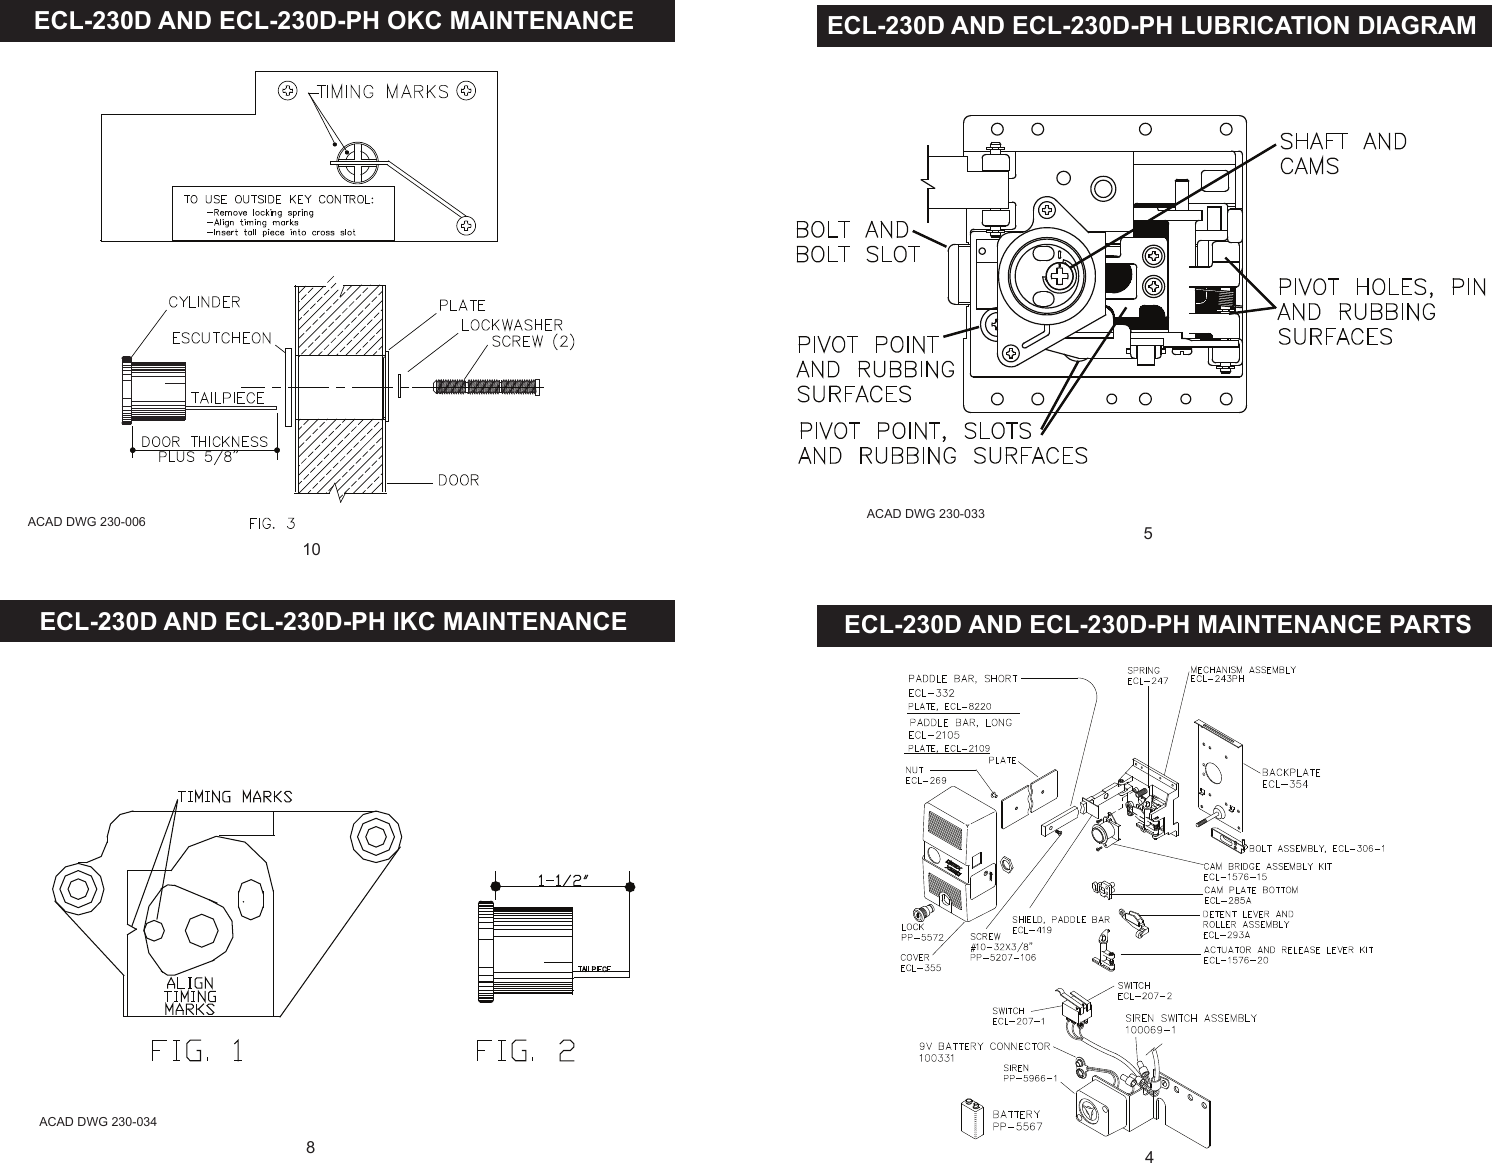 Page 4 of 5 - Detex  ECL-230D Maintenance Manual ECL-230DMaintenance